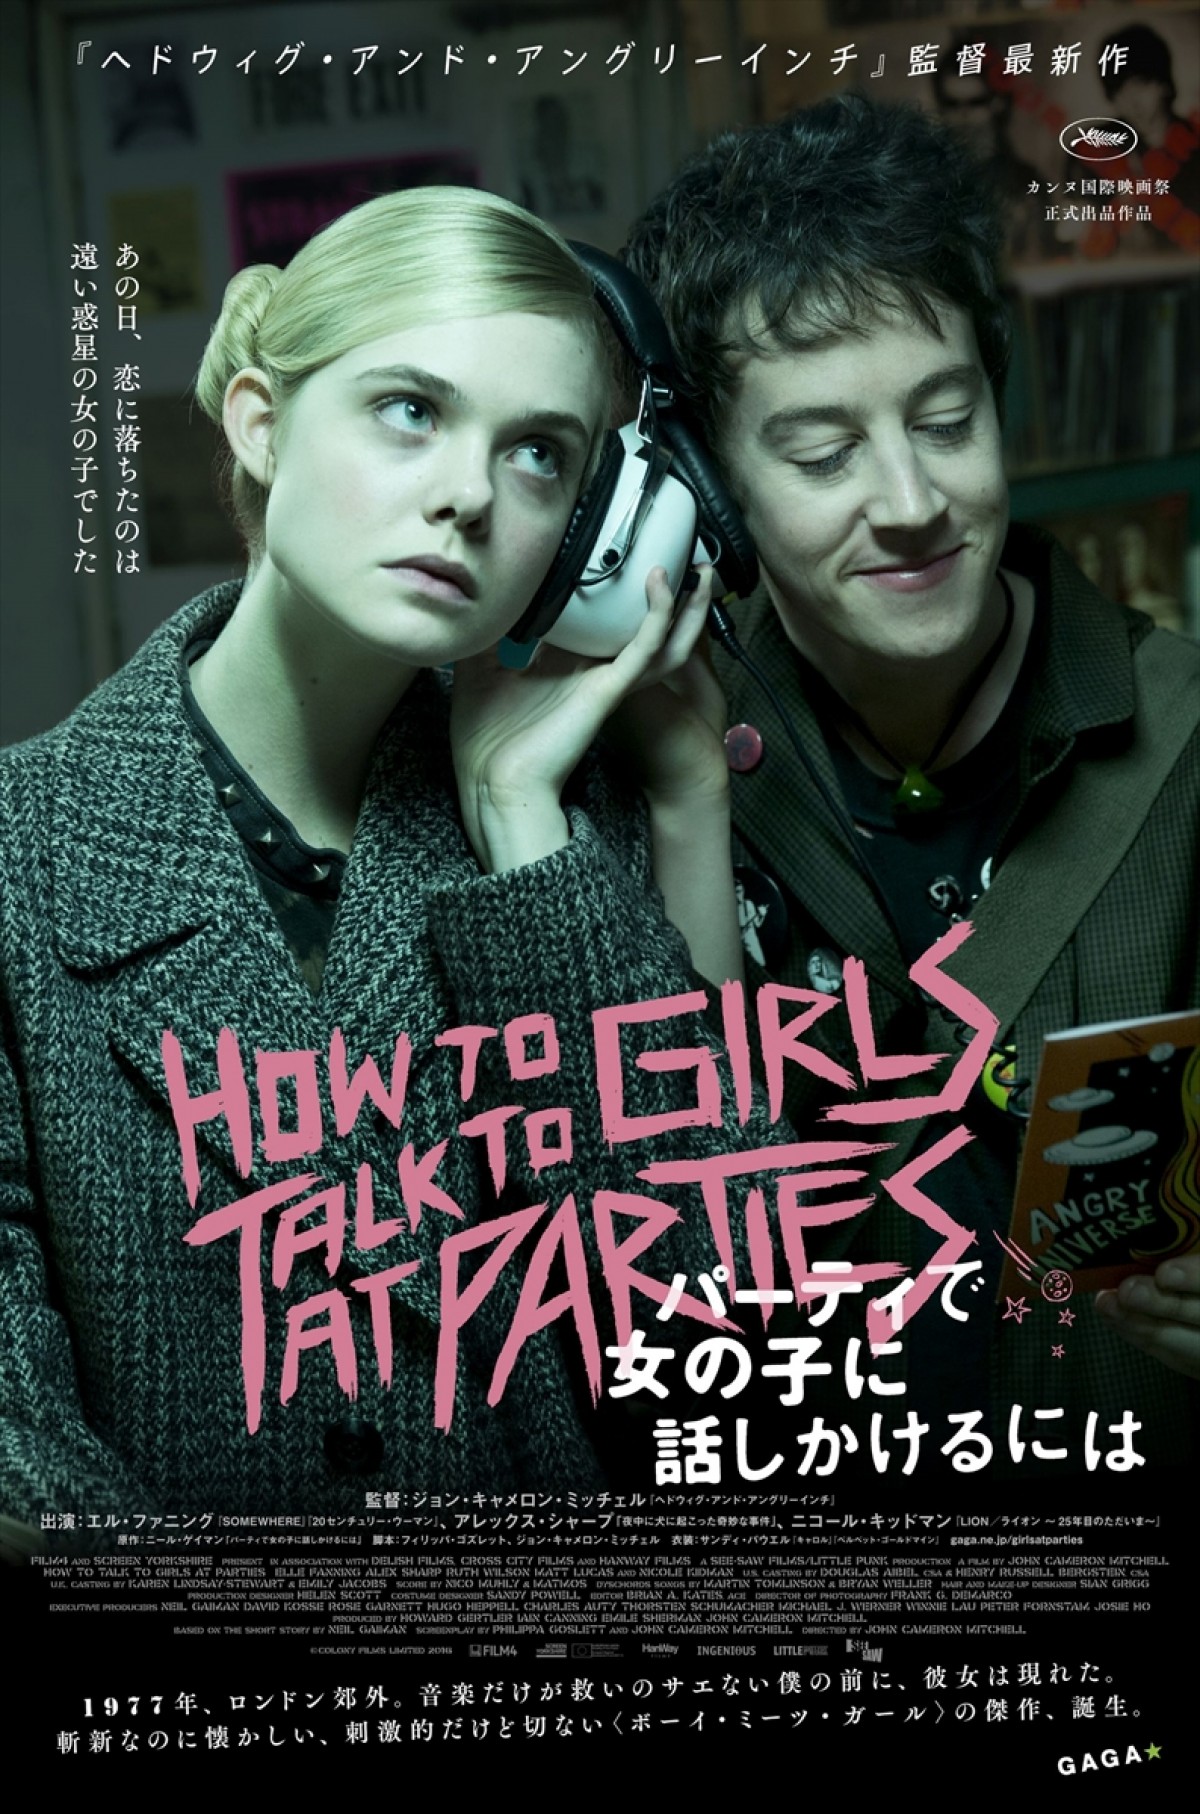 エル・ファニング主演、『パーティで女の子に話しかけるには』日本先行で世界初公開